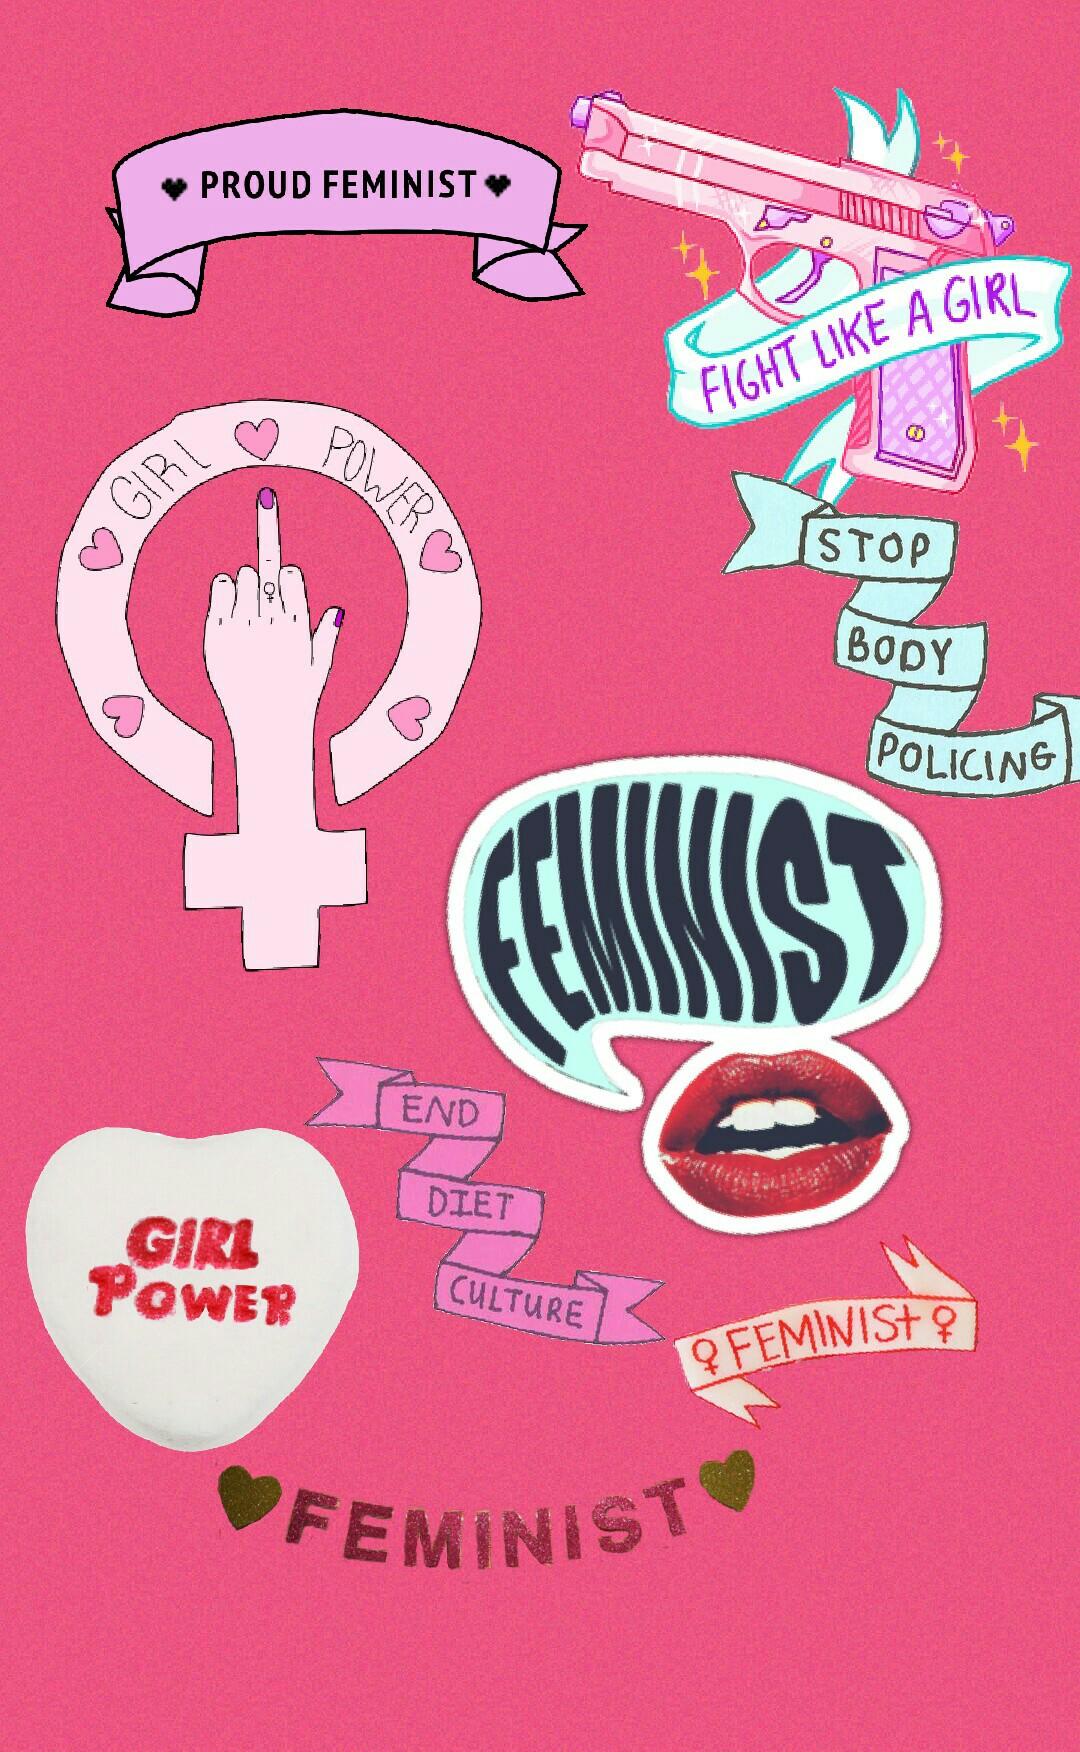 feminist power!